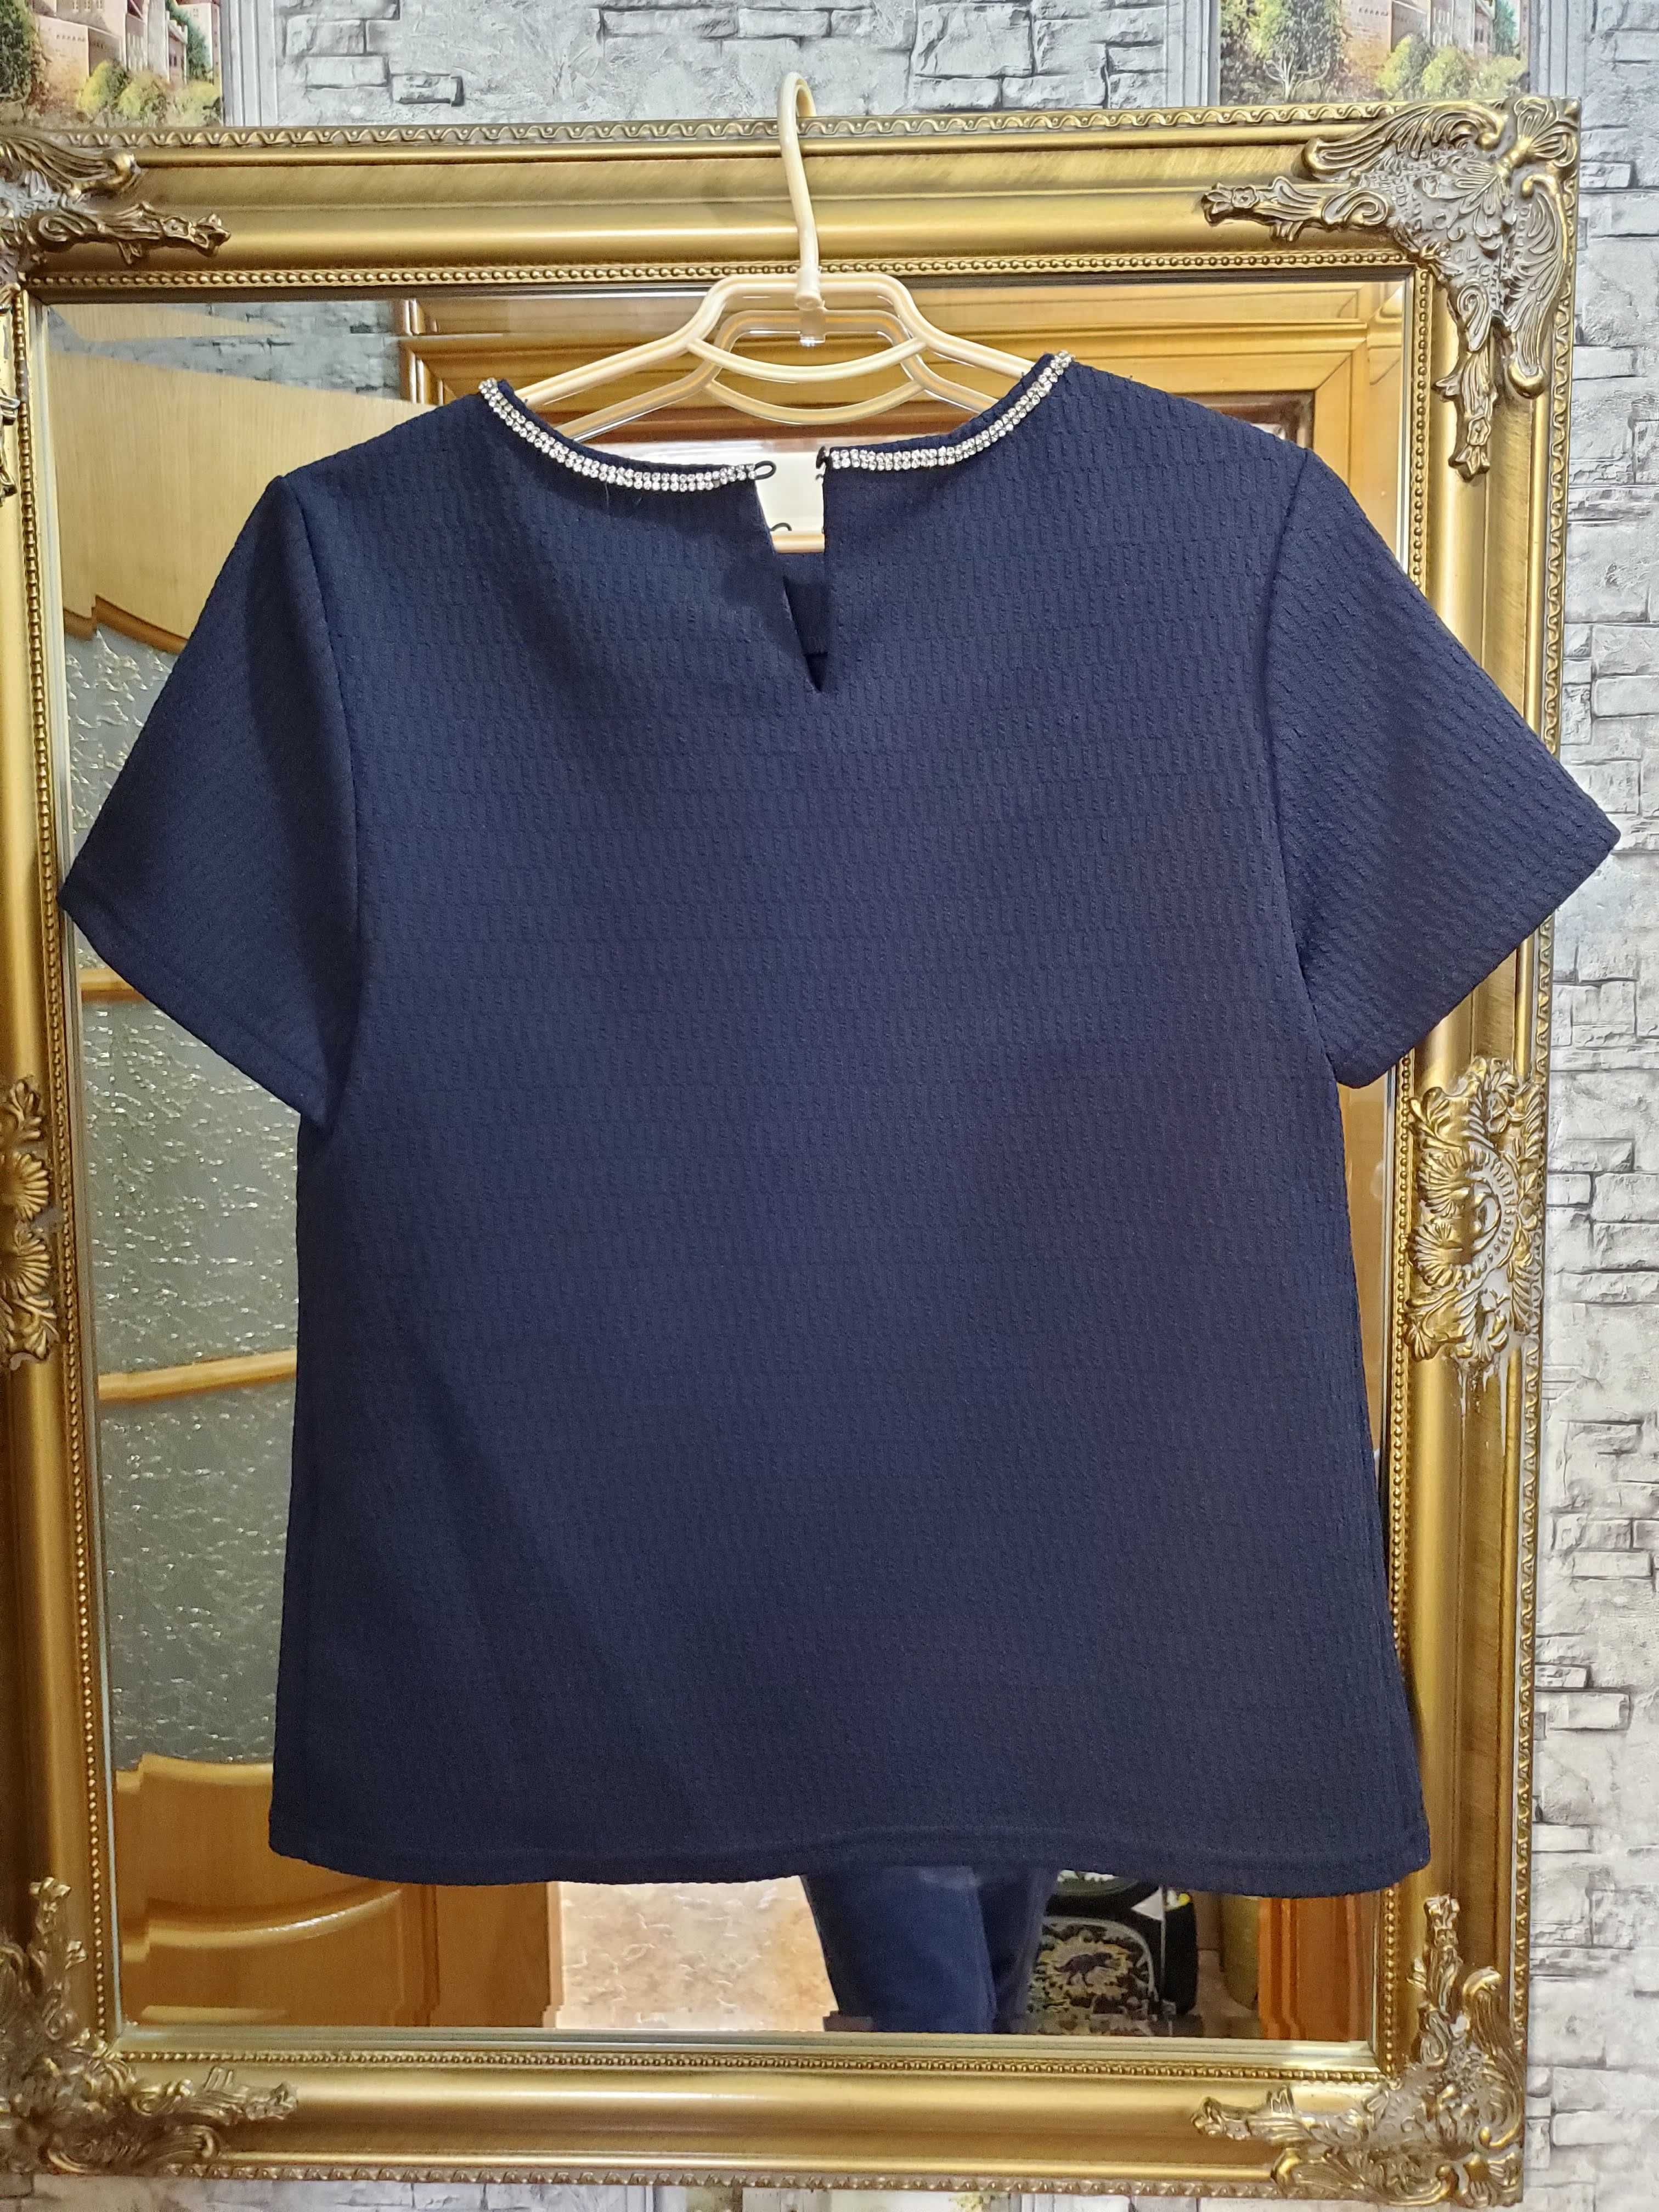 Блуза кофточка со стразами, темно-синяя, размер Л.